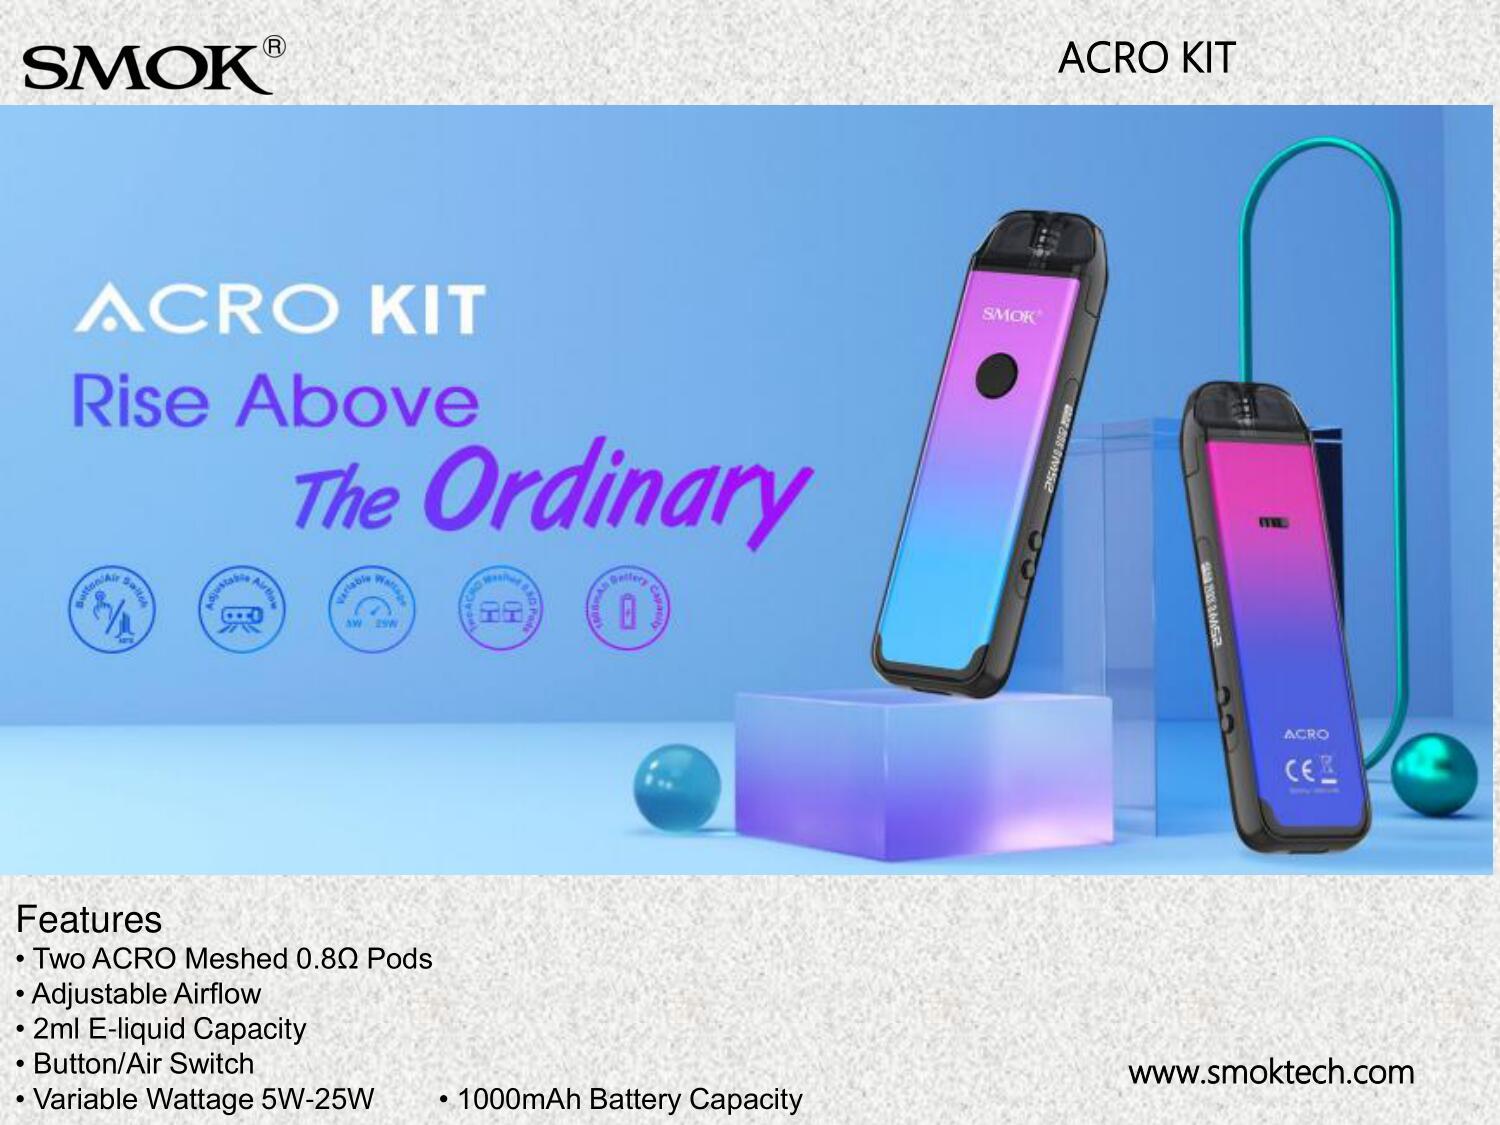 סגול | סיגריה אלקטרונית רב פעמית סמוק אקרו קיט SMOK ACRO KIT בצבע סגול